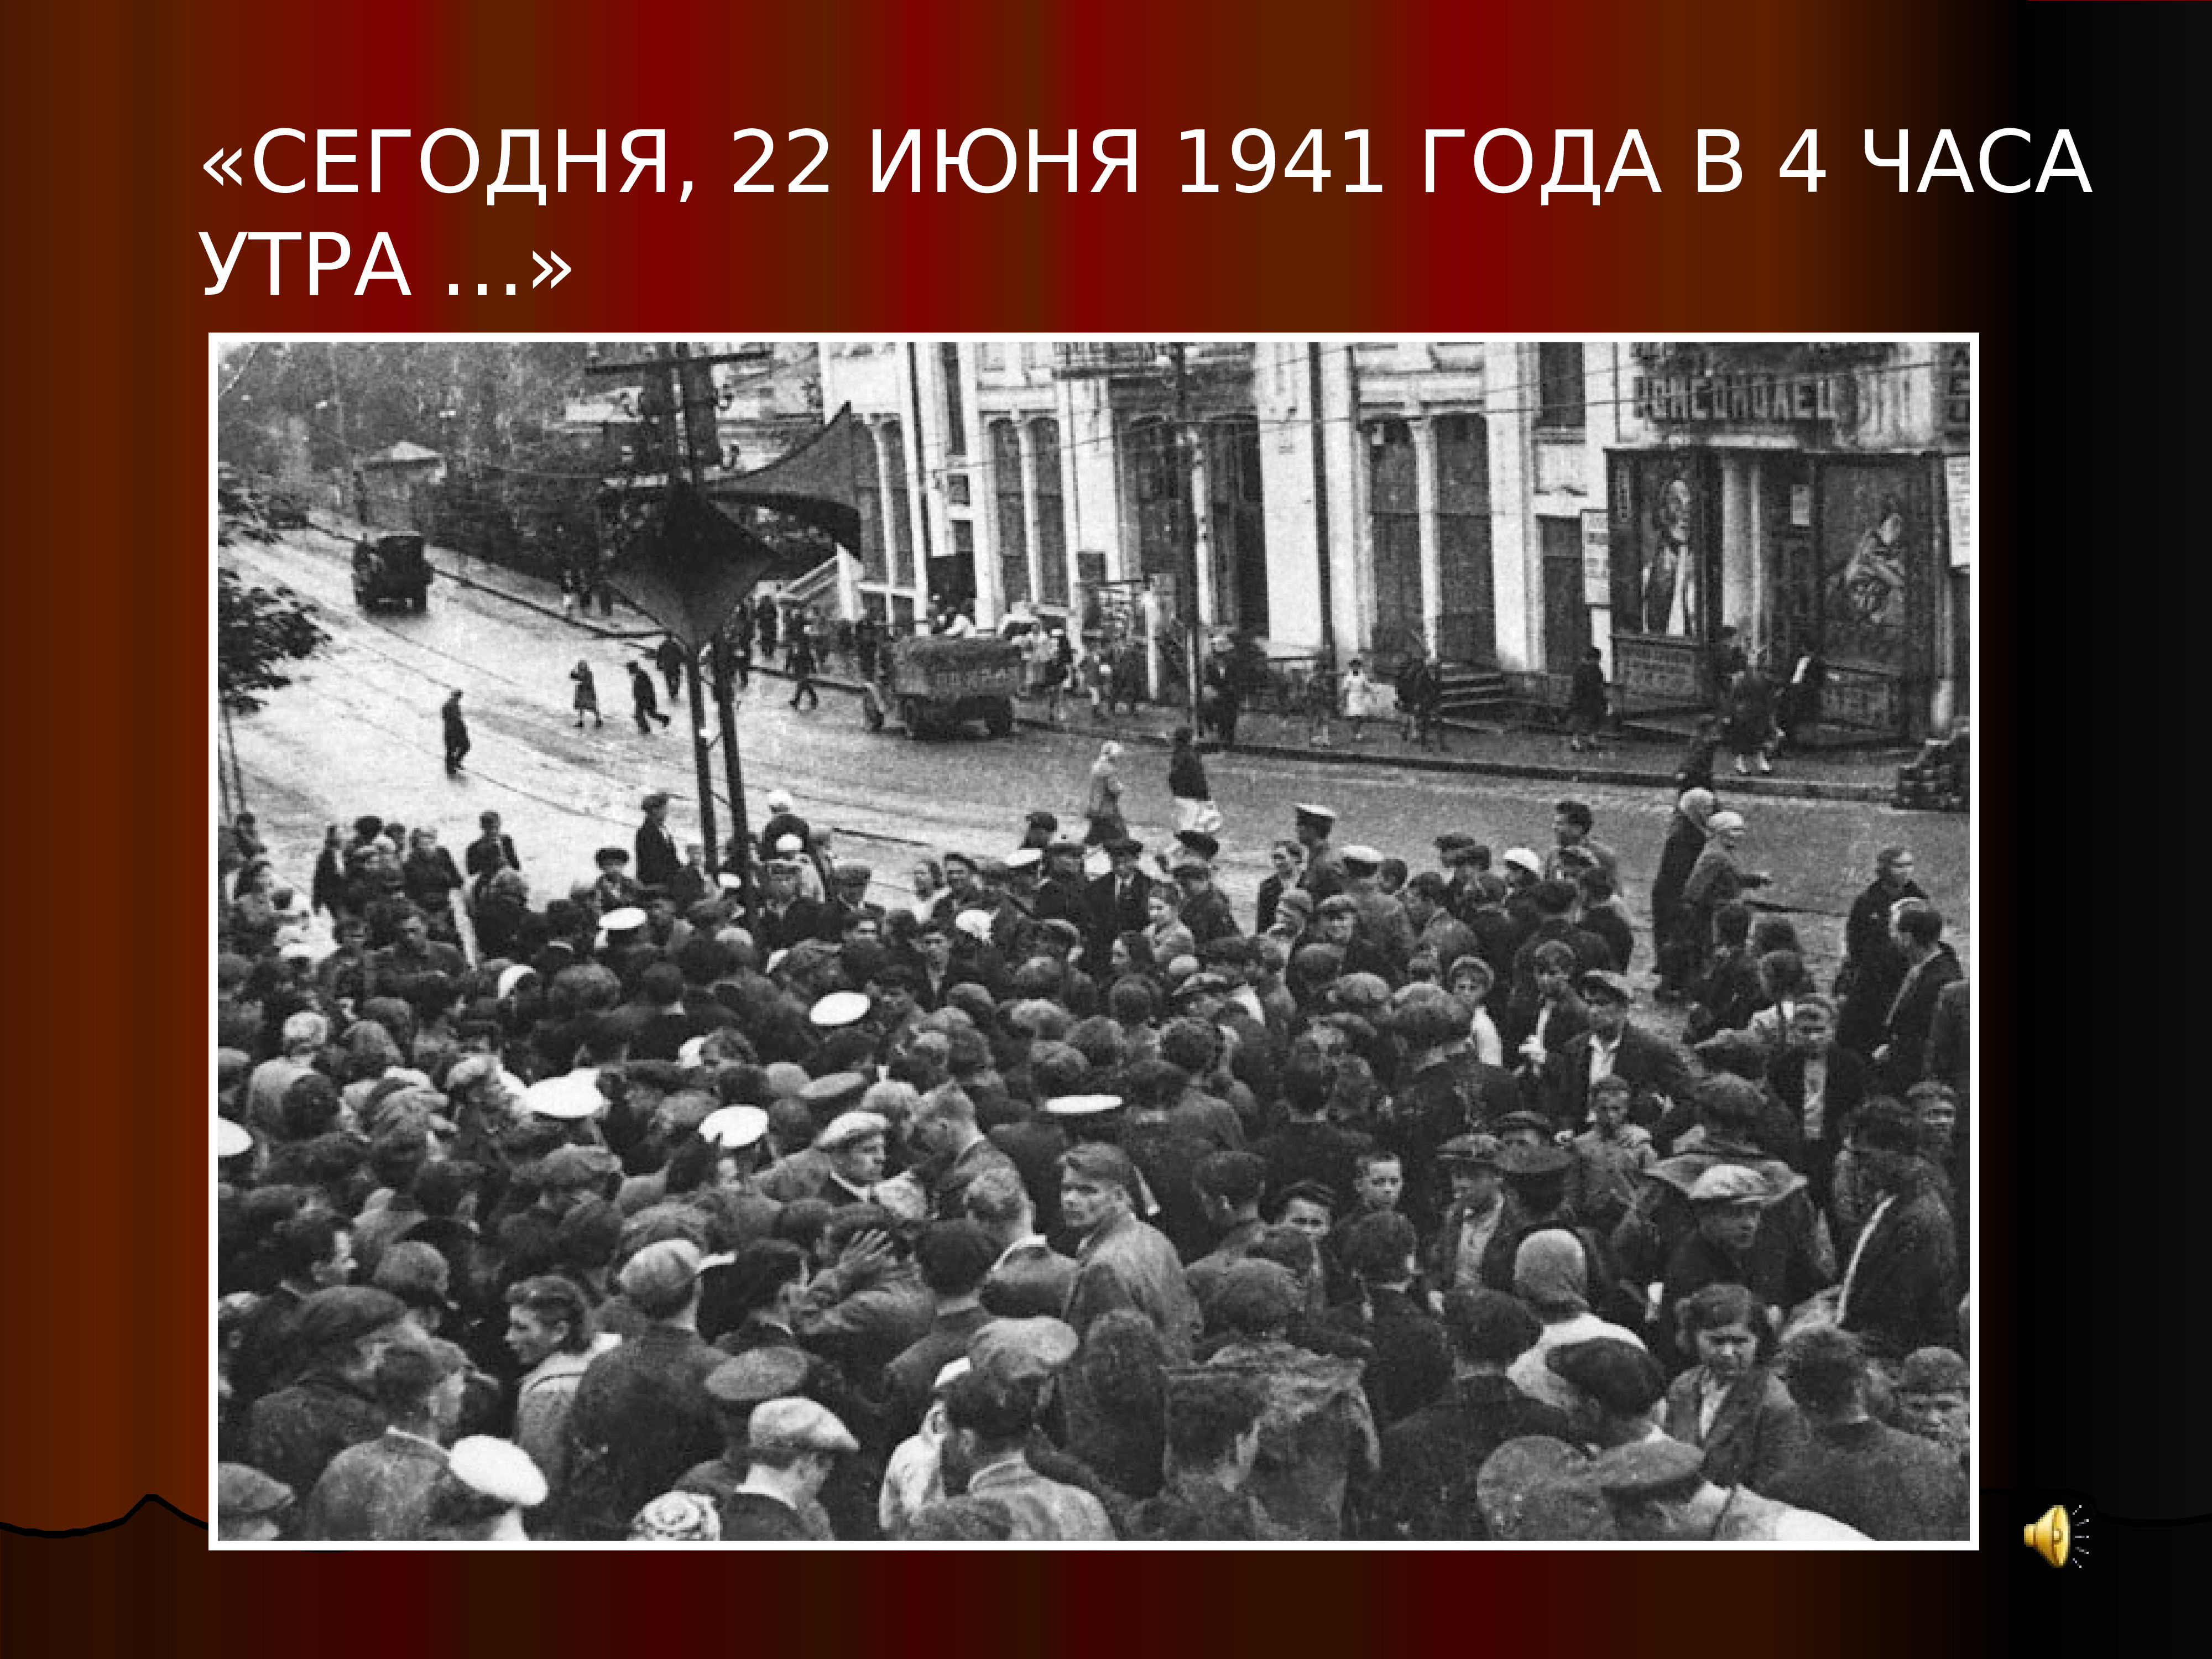 Это было в самом начале войны. 22 Июня 1941 года начало Великой Отечественной войны 1941-1945. Начало ВОВ 1941 года.